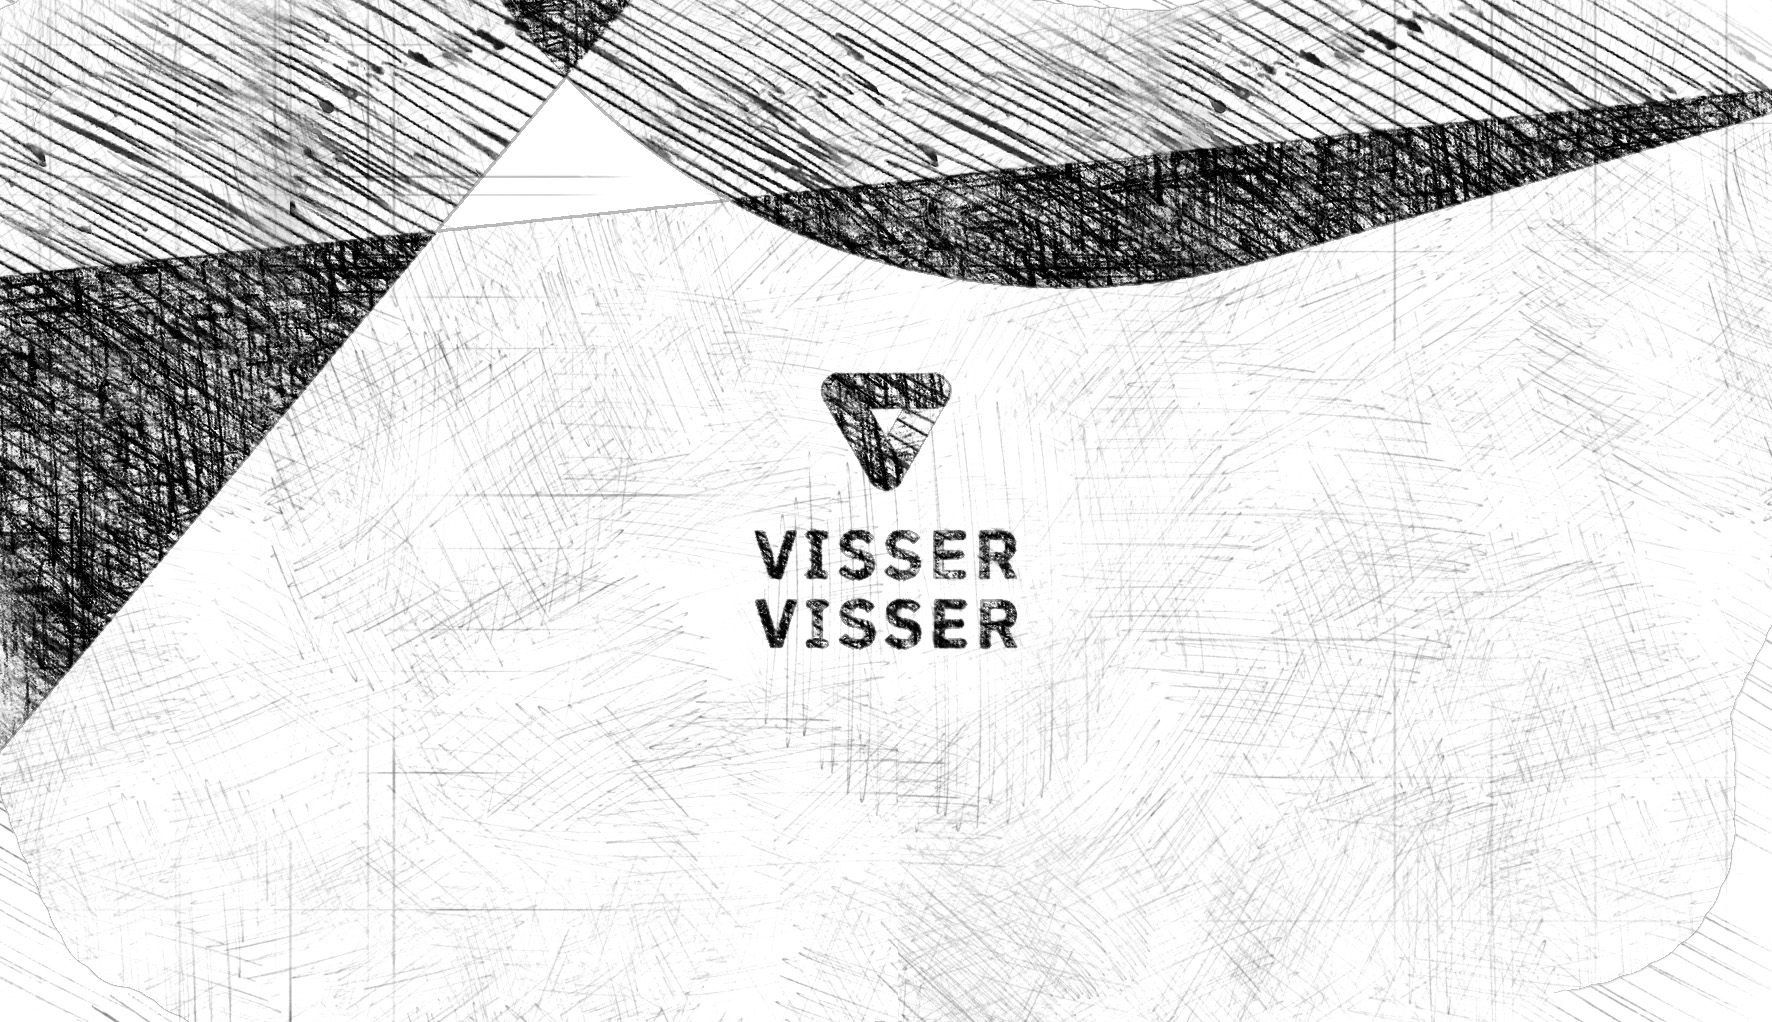 Geschetste monochrome schuine vlakken die een indruk geven van het merk Visser & Visser met een geschetst logo van Visser & Visser in het midden